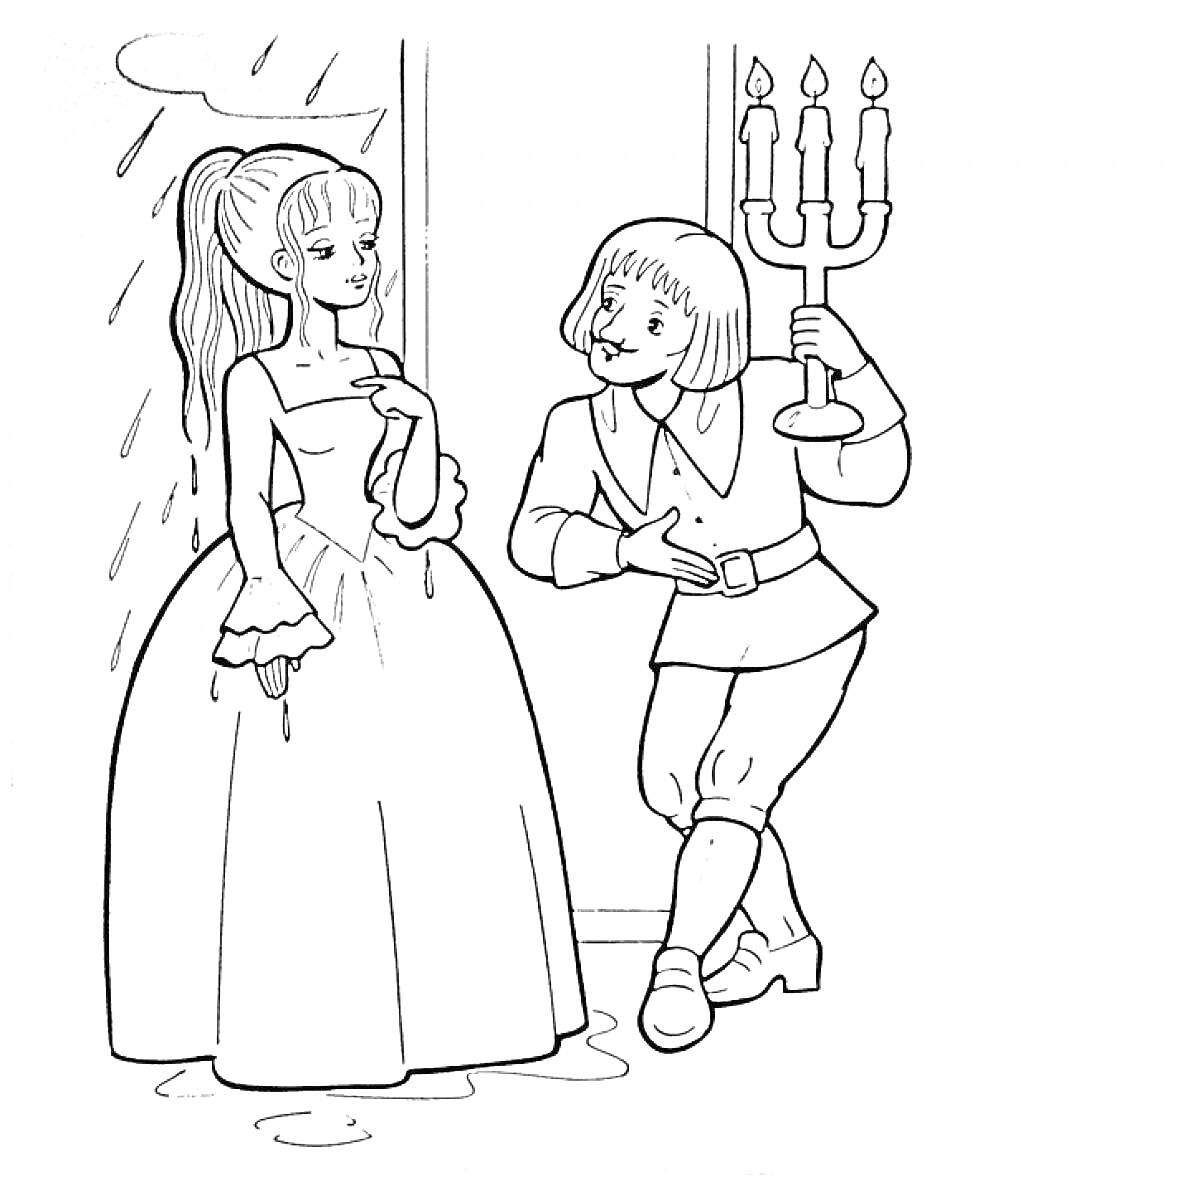 Принцесса на горошине в разговоре с принцем у двери с горящим канделябром